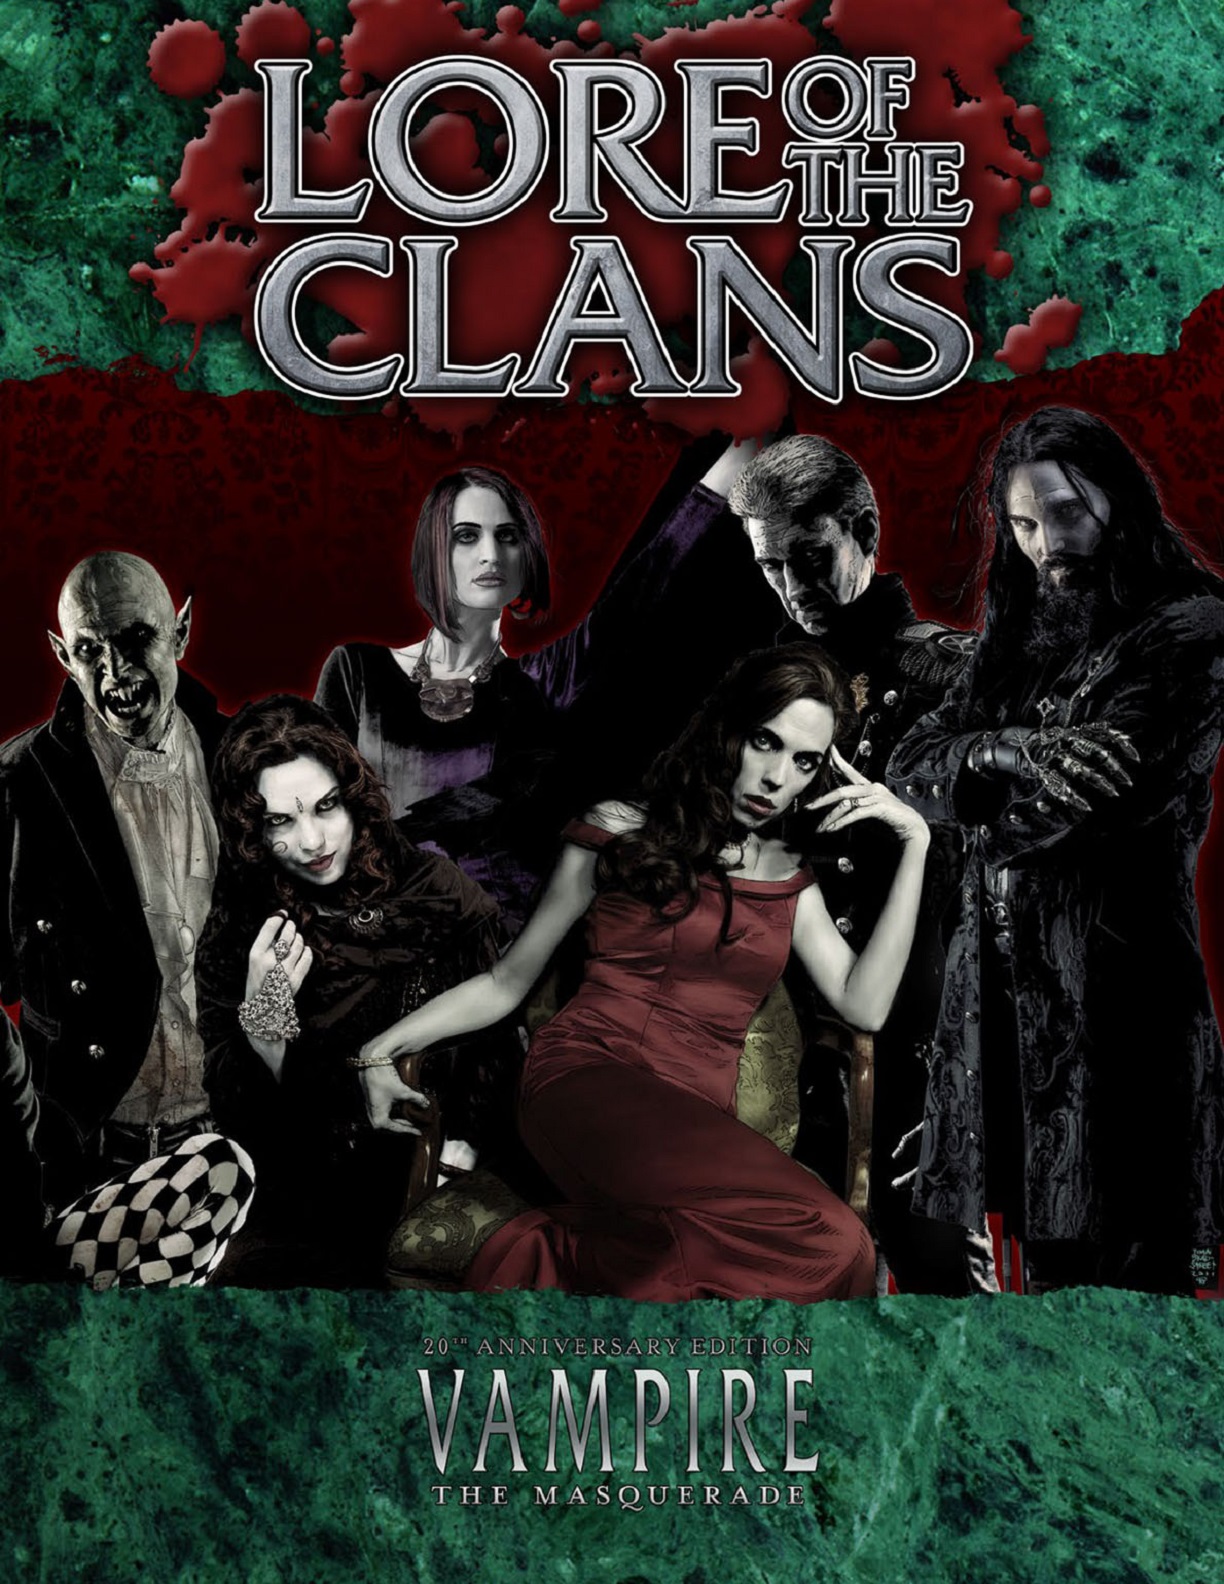 vampire the masquerade clan